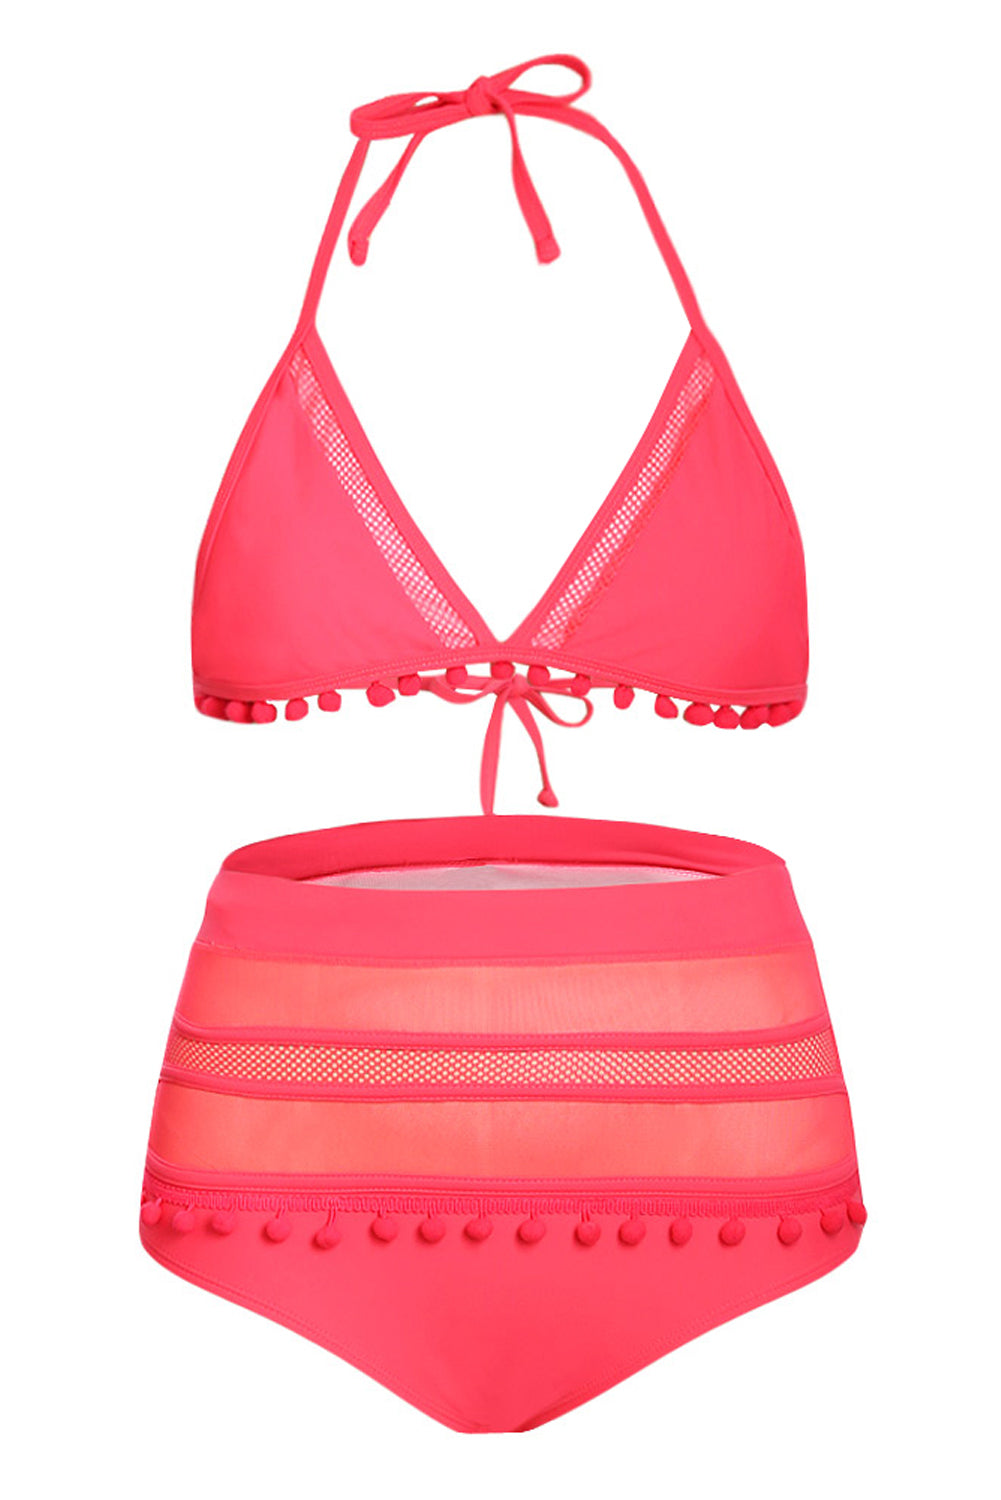 Rosy Pom Pom Mesh Insert High Waist Bikini Set